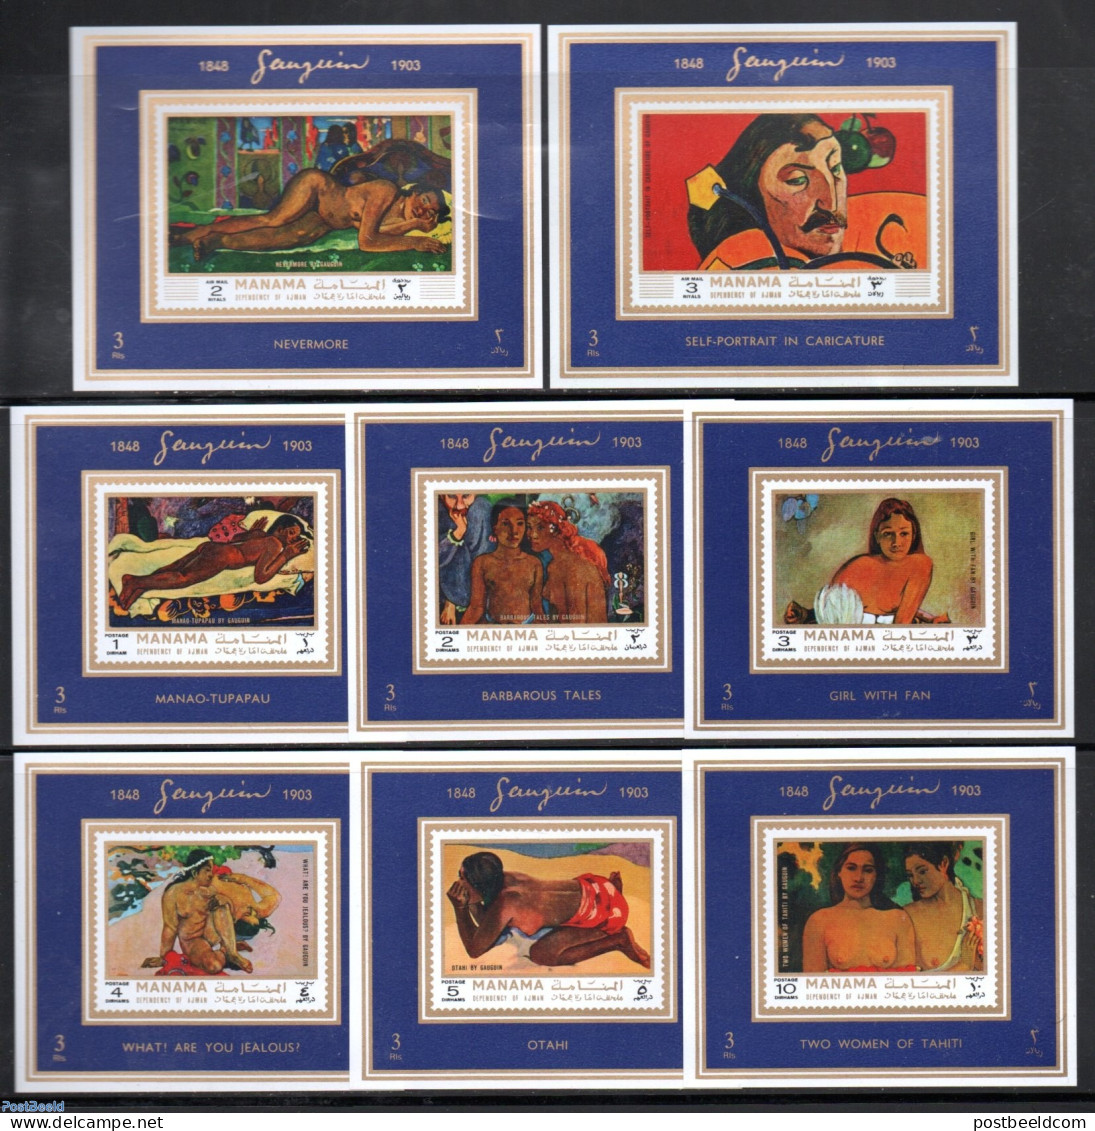 Manama 1971 Gauguin 8 S/s, Mint NH, Art - Modern Art (1850-present) - Nude Paintings - Paintings - Paul Gauguin - Manama